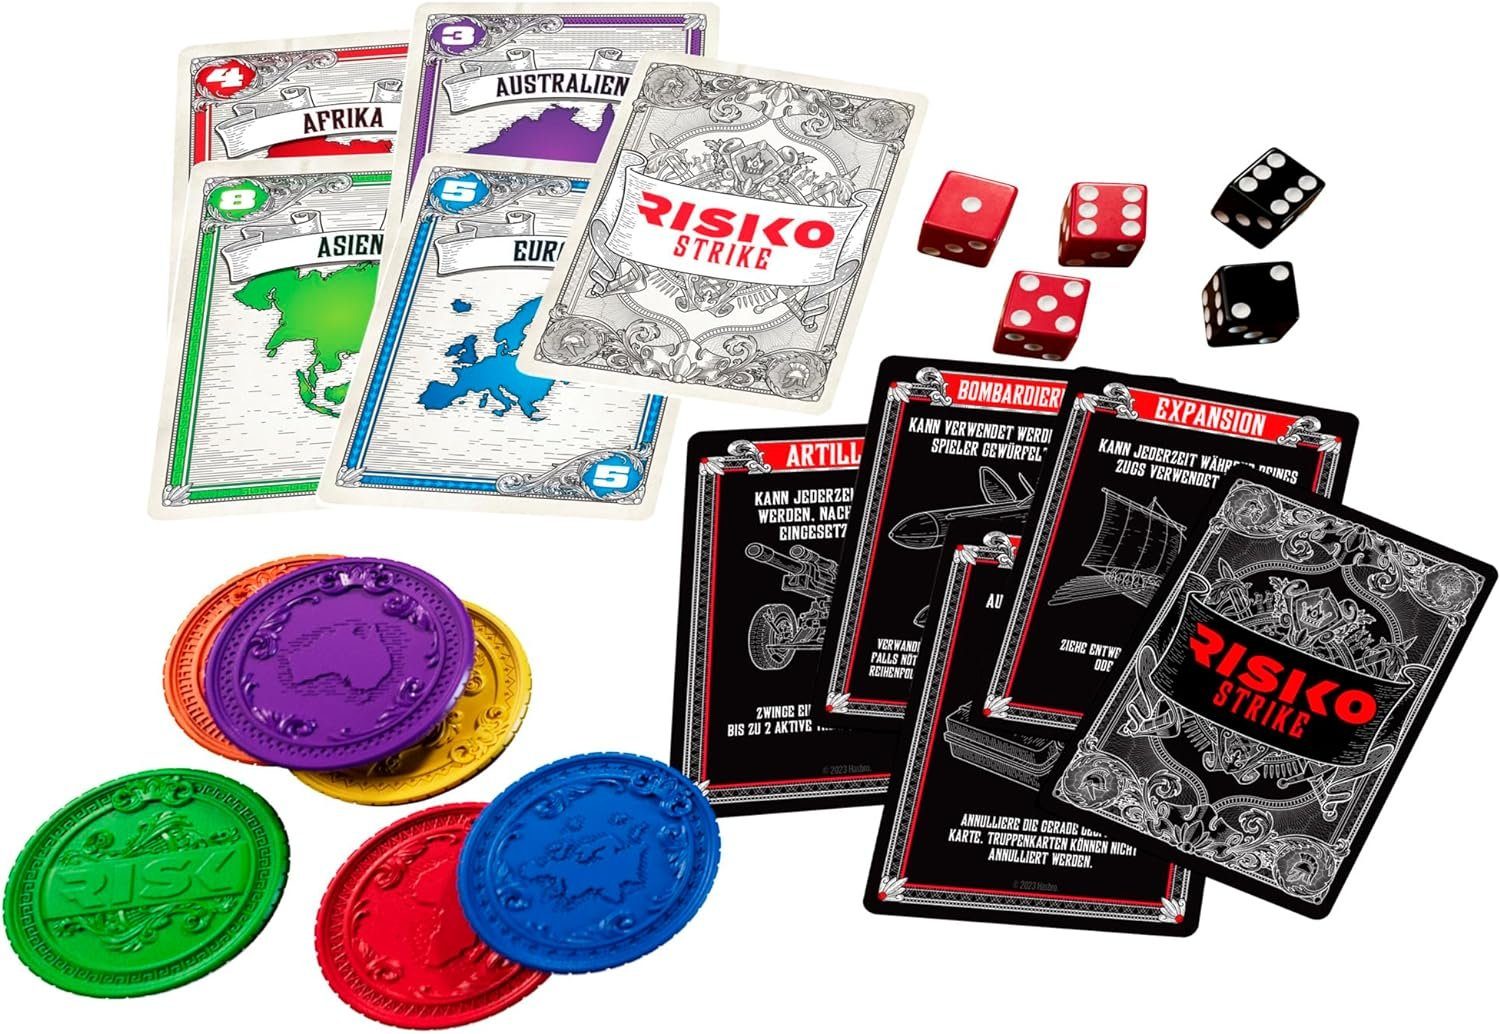 Hasbro BUNDLE Jahre Strike - Risiko Jubiläums-Ausgabe Brettspiel Spiel, 60 + Kartenspiel